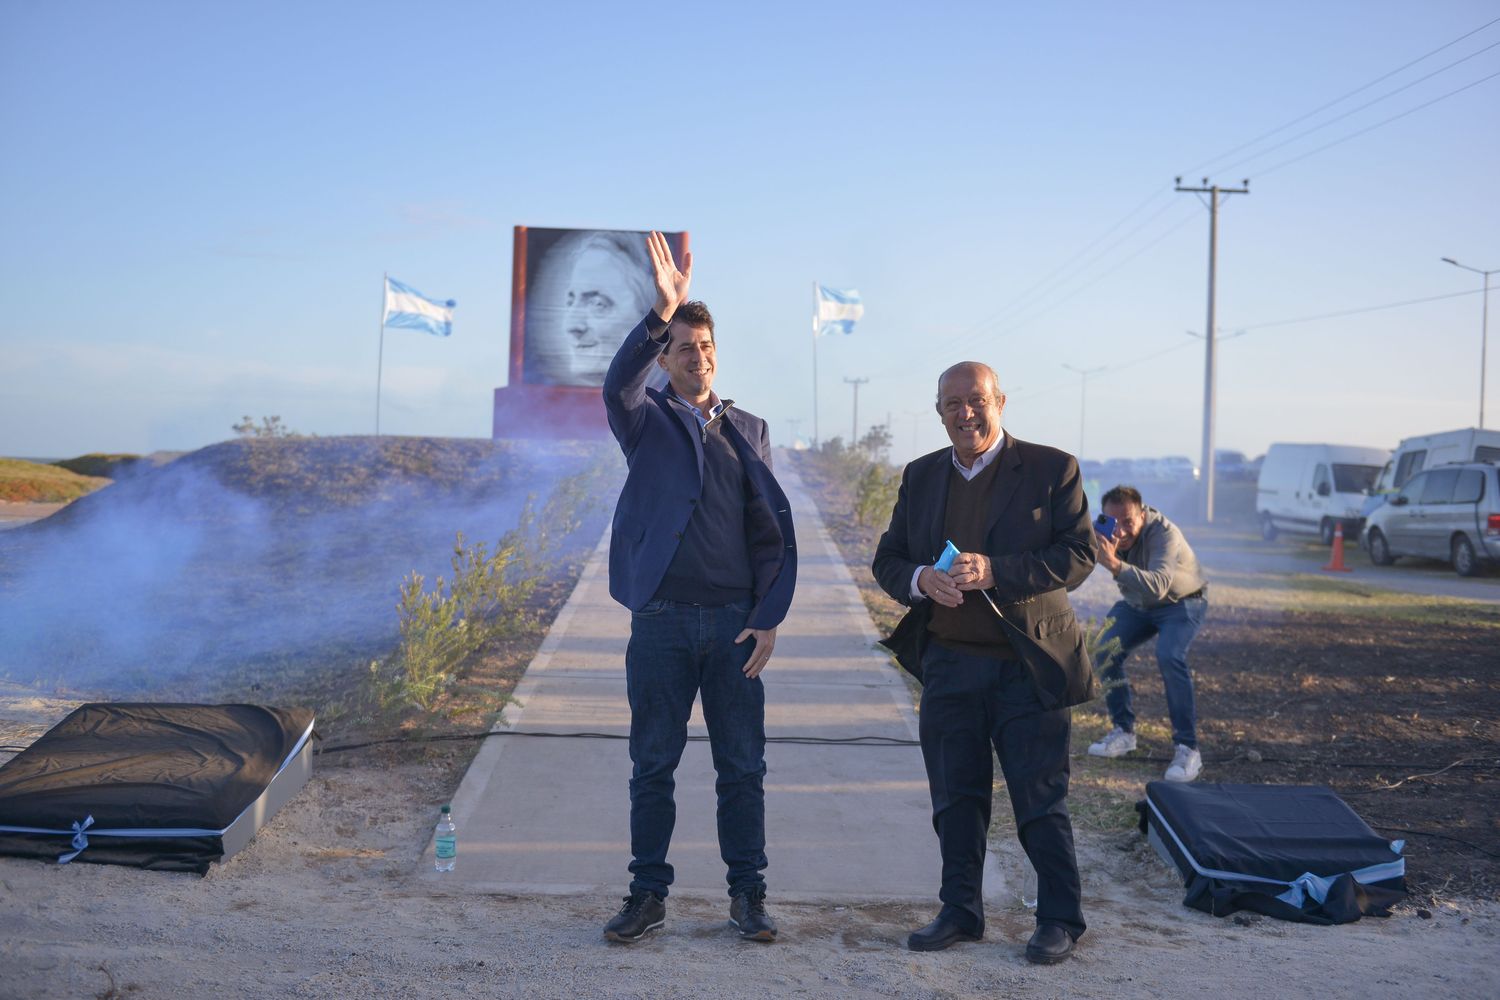 ¿De campaña?: "Wado" de Pedro participó de dos homenajes "anti- grieta" a Alfonsín y Kirchner en Mar Chiquita